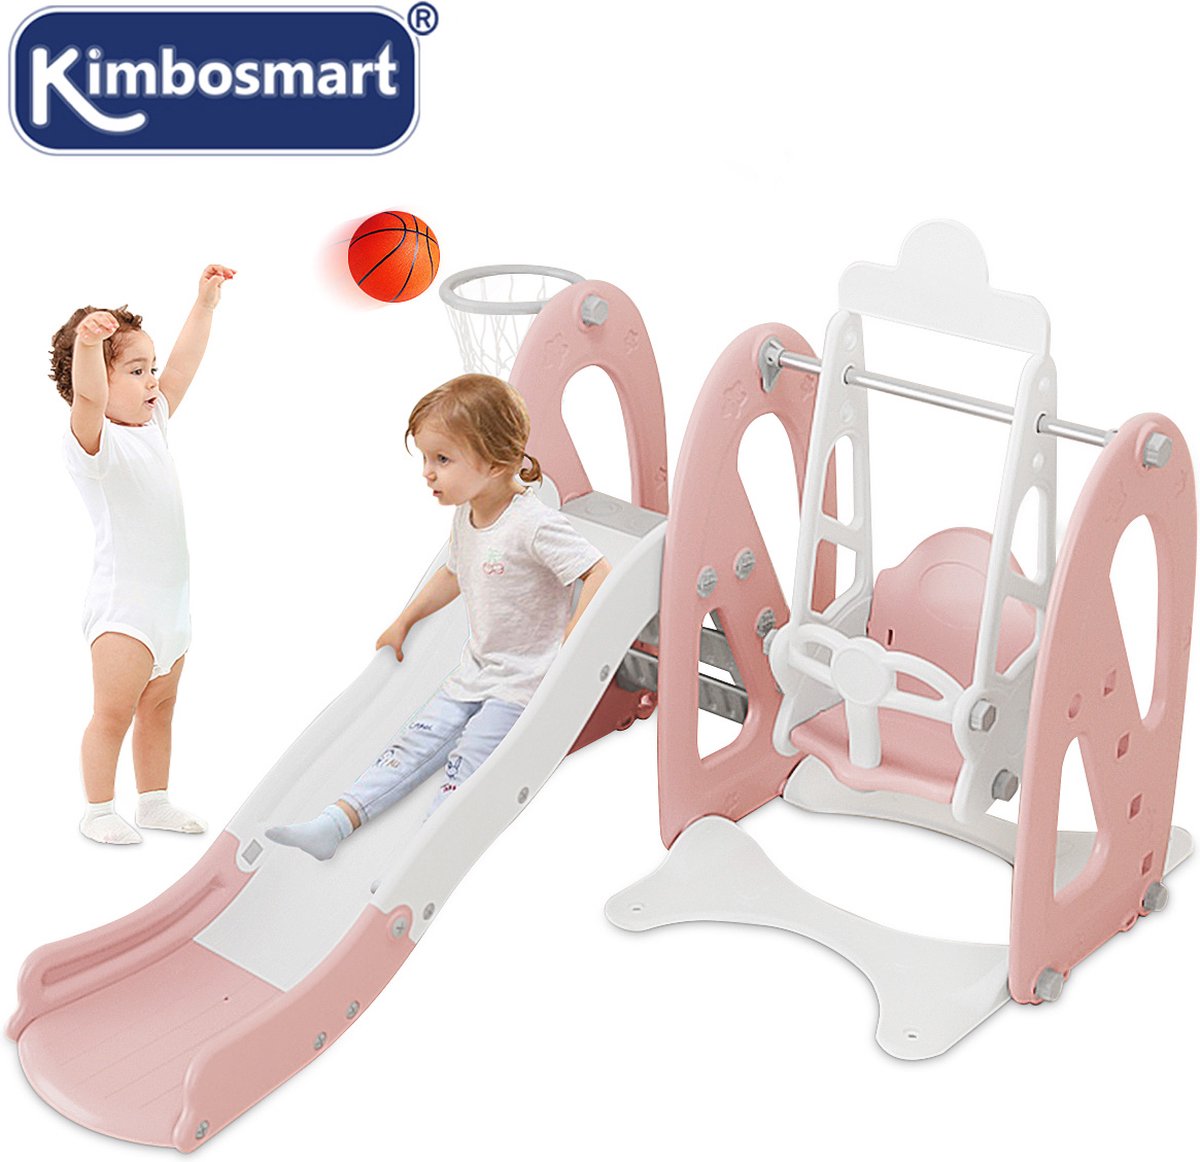 Kimbosmart Glijbanen- Speelset voor Binnen of Buiten - Tuin- en Buitenspeelgoed voor Kinderen, Duurzaam, Stabiel, Veilig - Roze (Aanbevolen leeftijd 6 months-10 years)